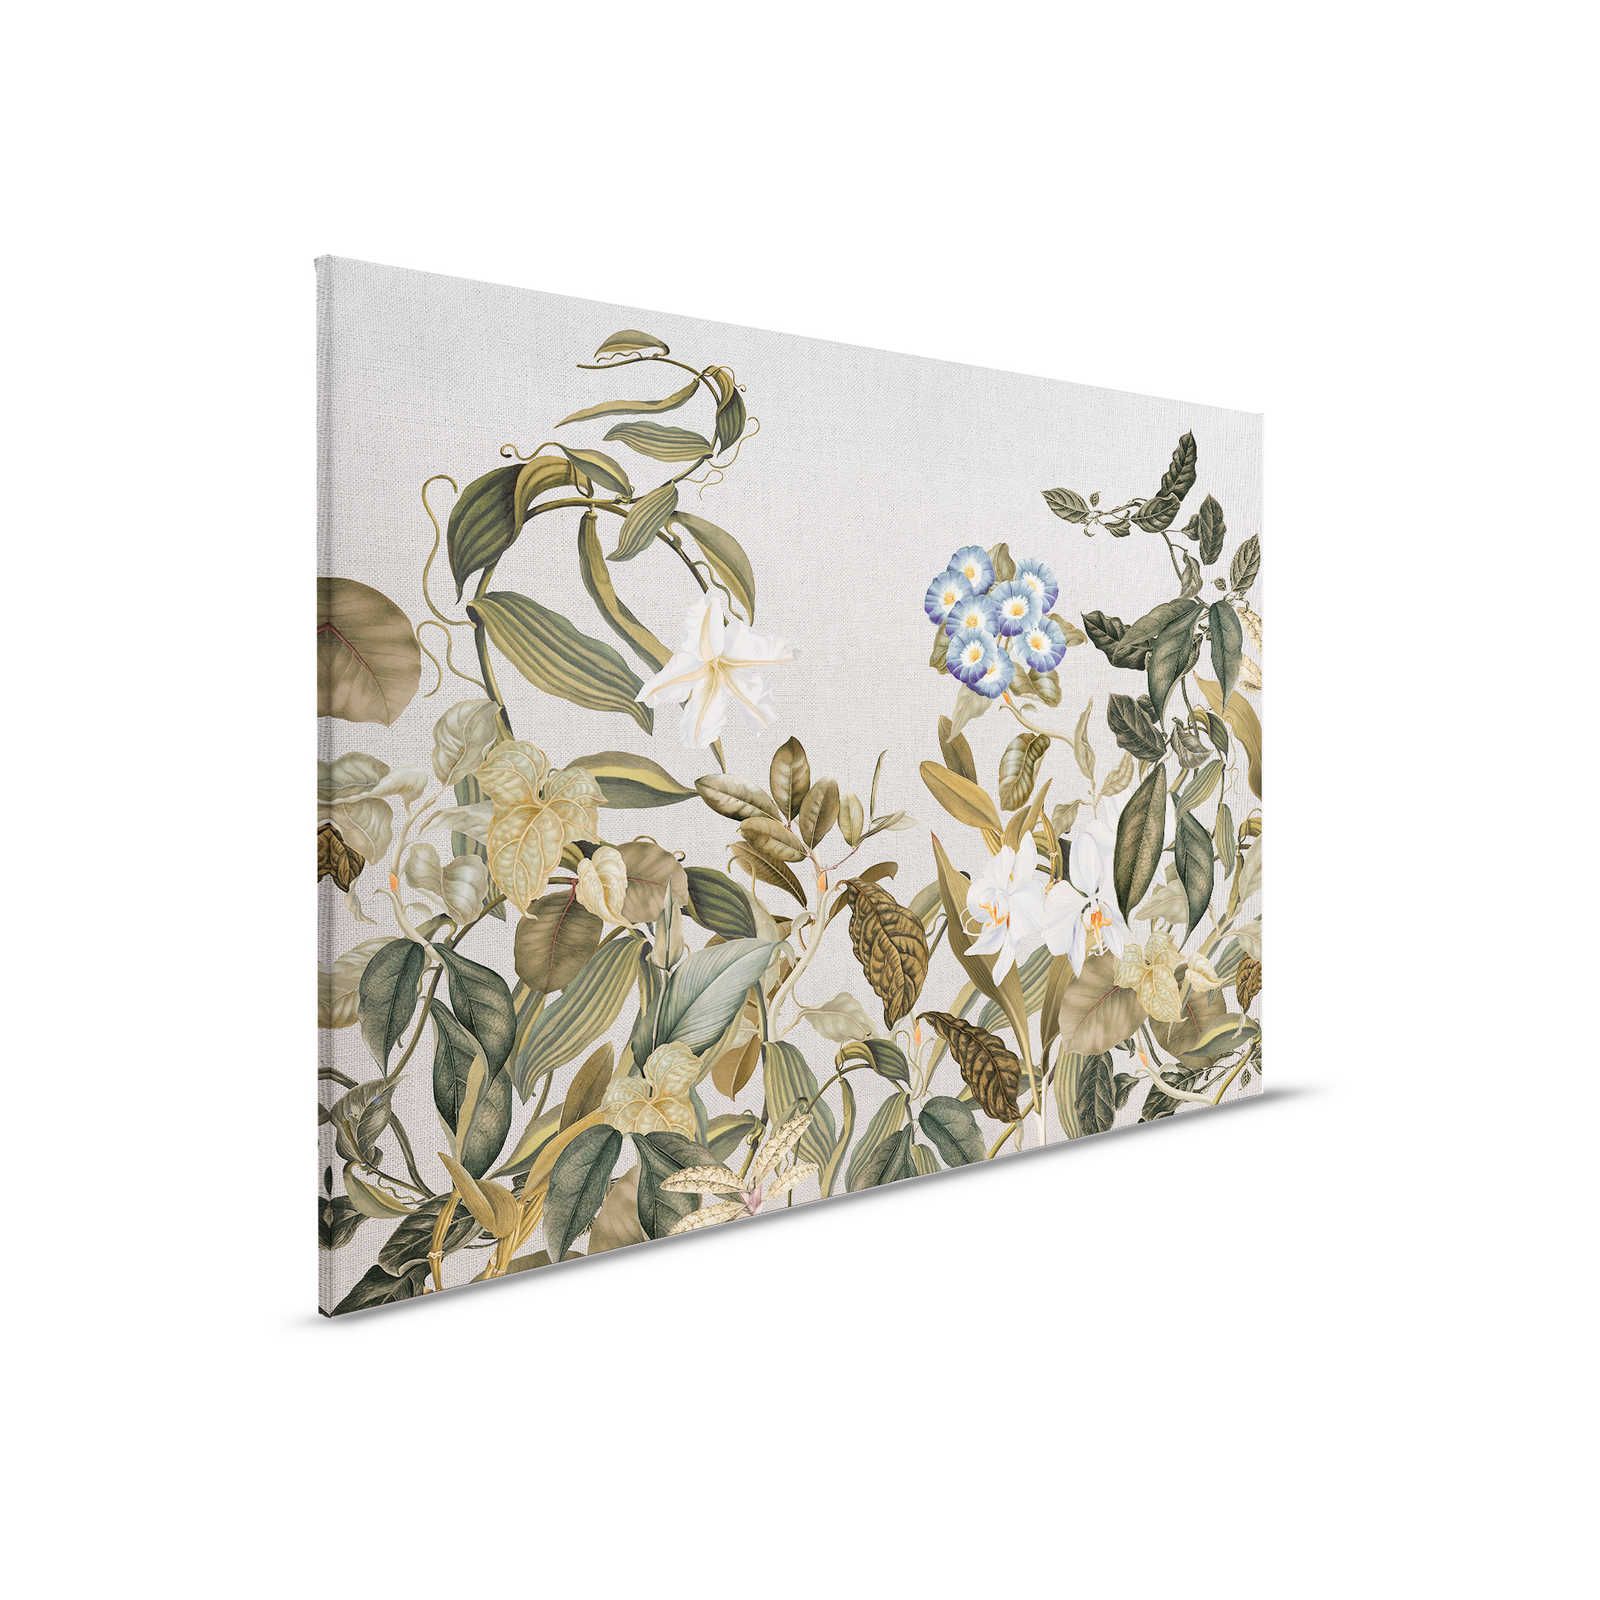 Quadro su tela in stile botanico Fiori, foglie e aspetto tessile - 0,90 m x 0,60 m
